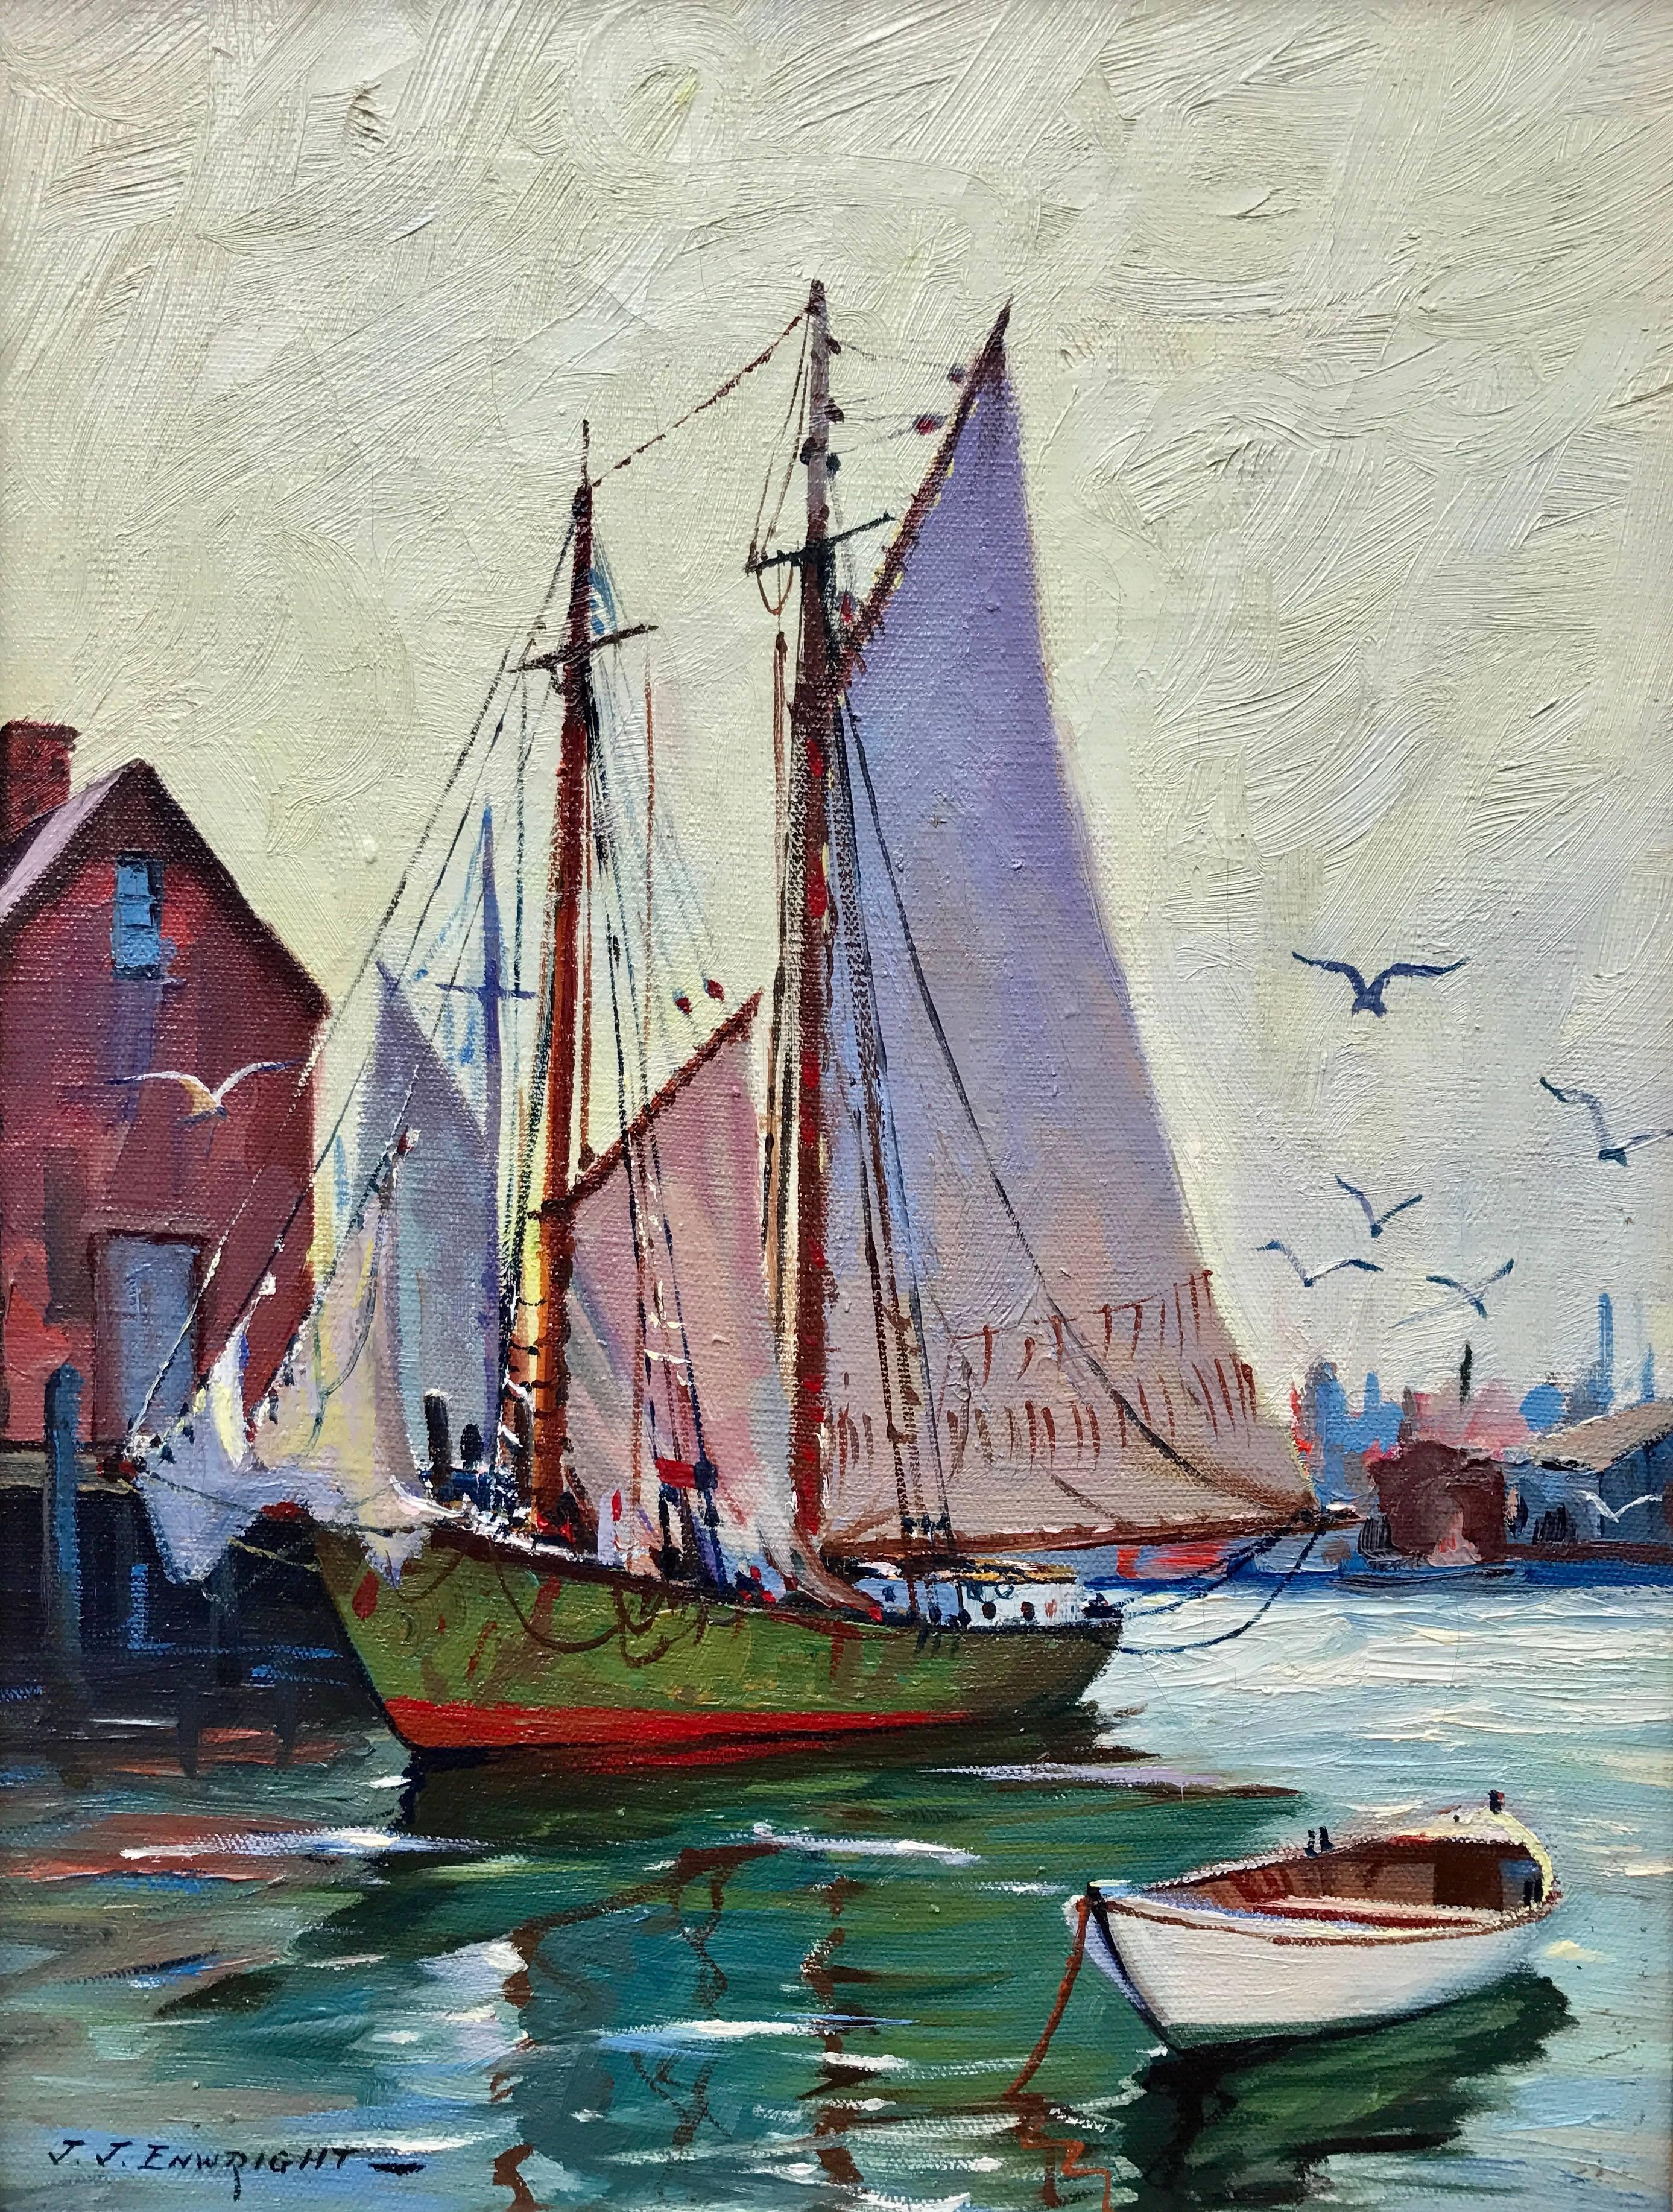 C. Hjalmar Amundsen Landscape Painting – "Gloucester Dockside"